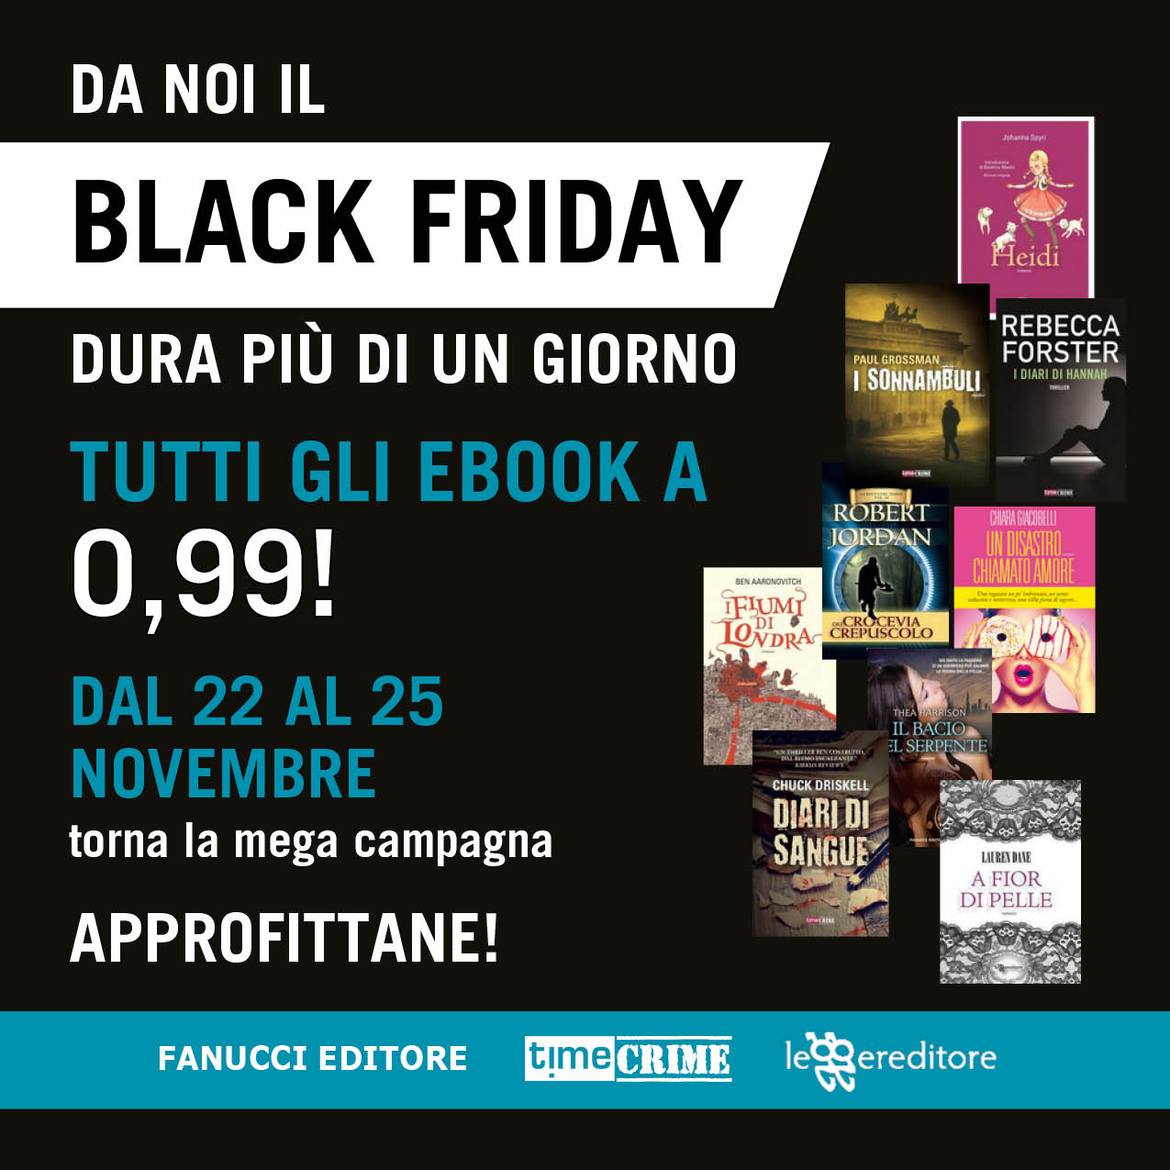 Black Friday: Tutti gli eBook di Fanucci in offerta a 99 centesimi fino al 25 novembre